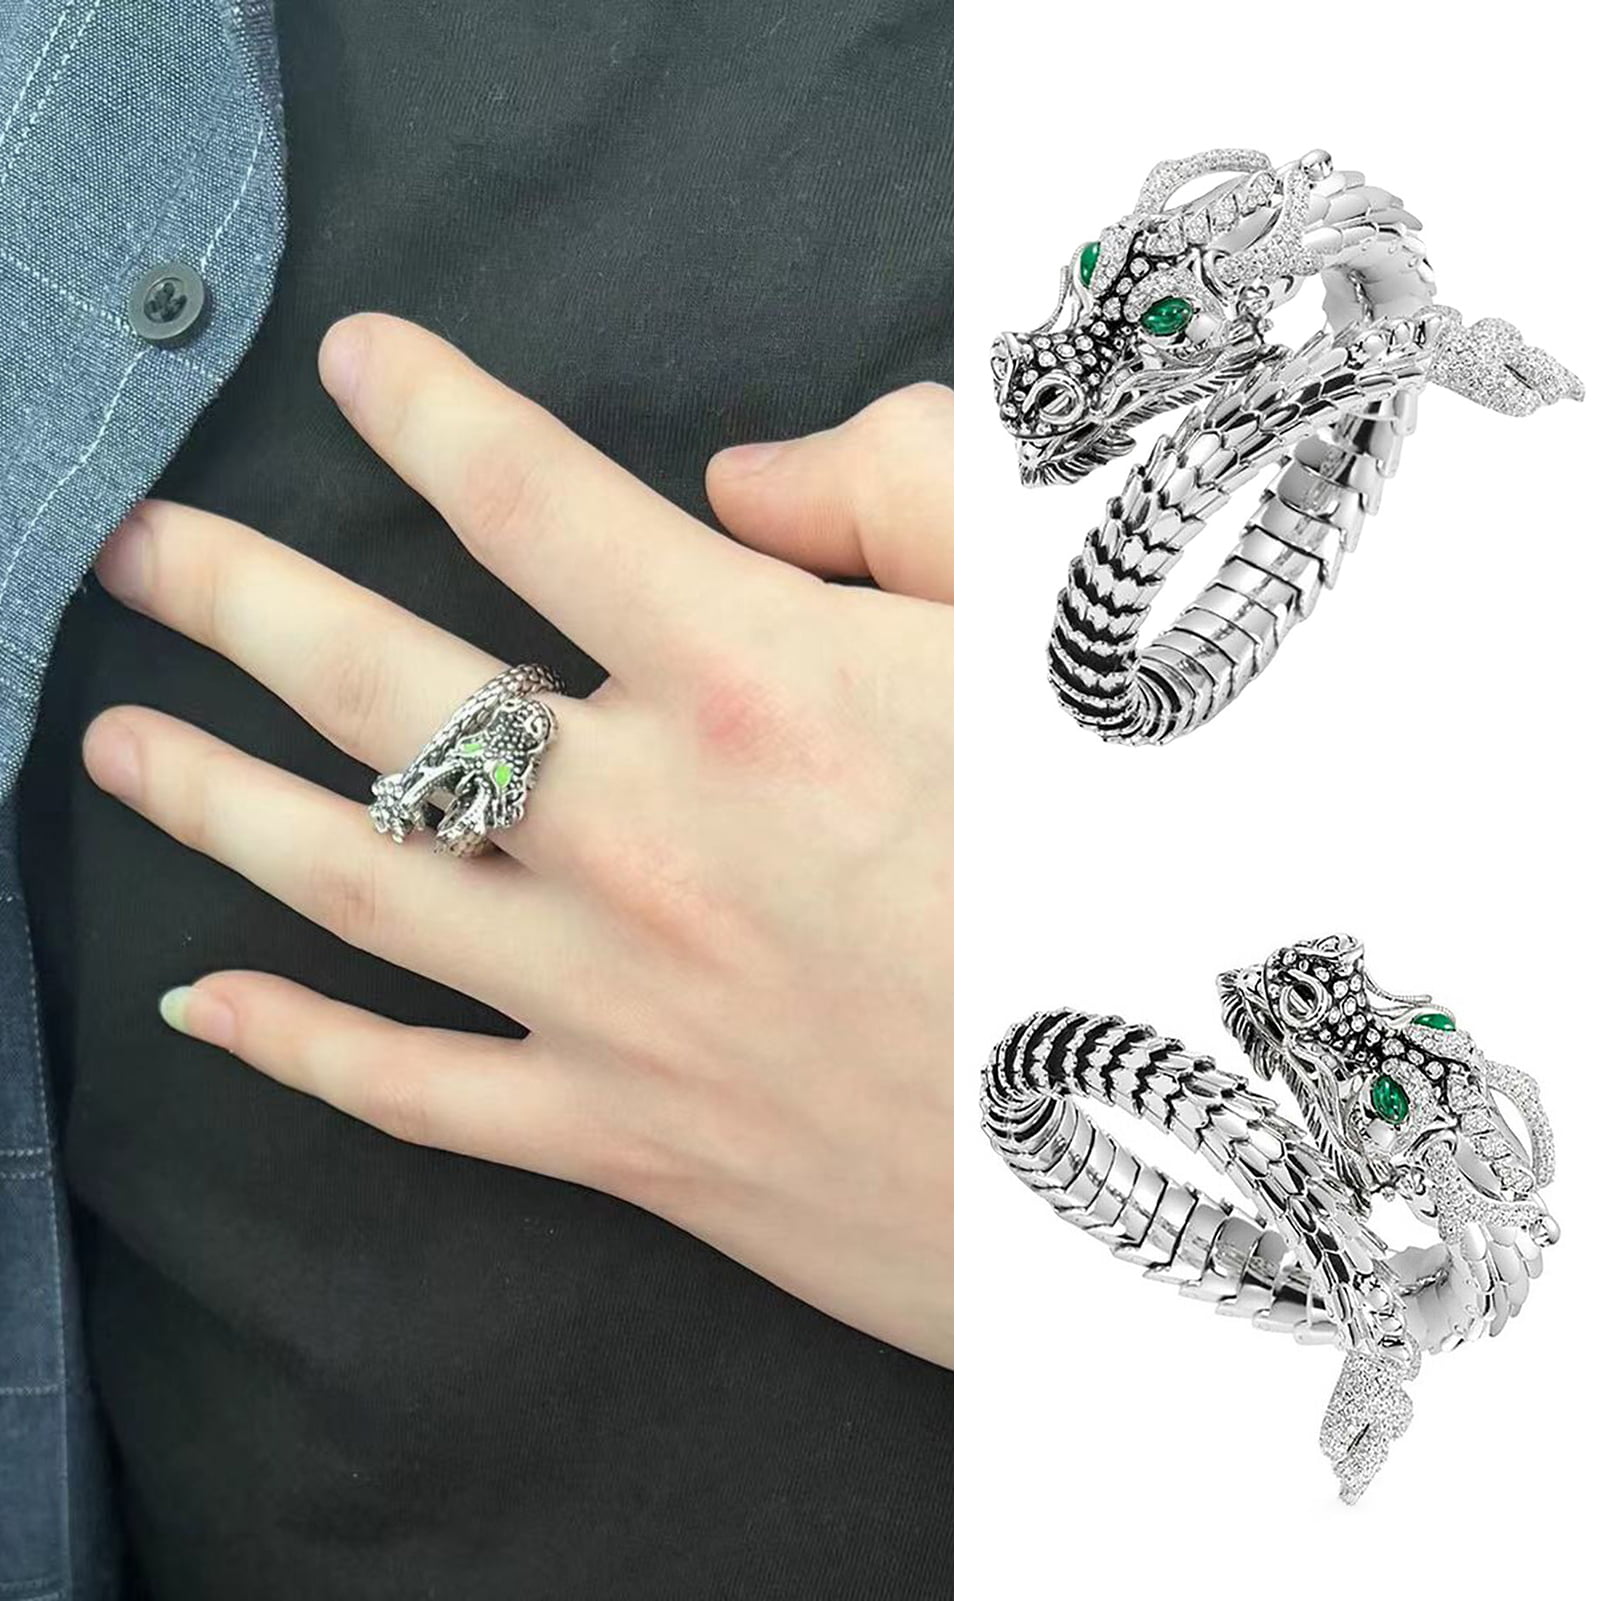 18K Gold Diamond Engagement rings for women | wedding rings | PC Chandra